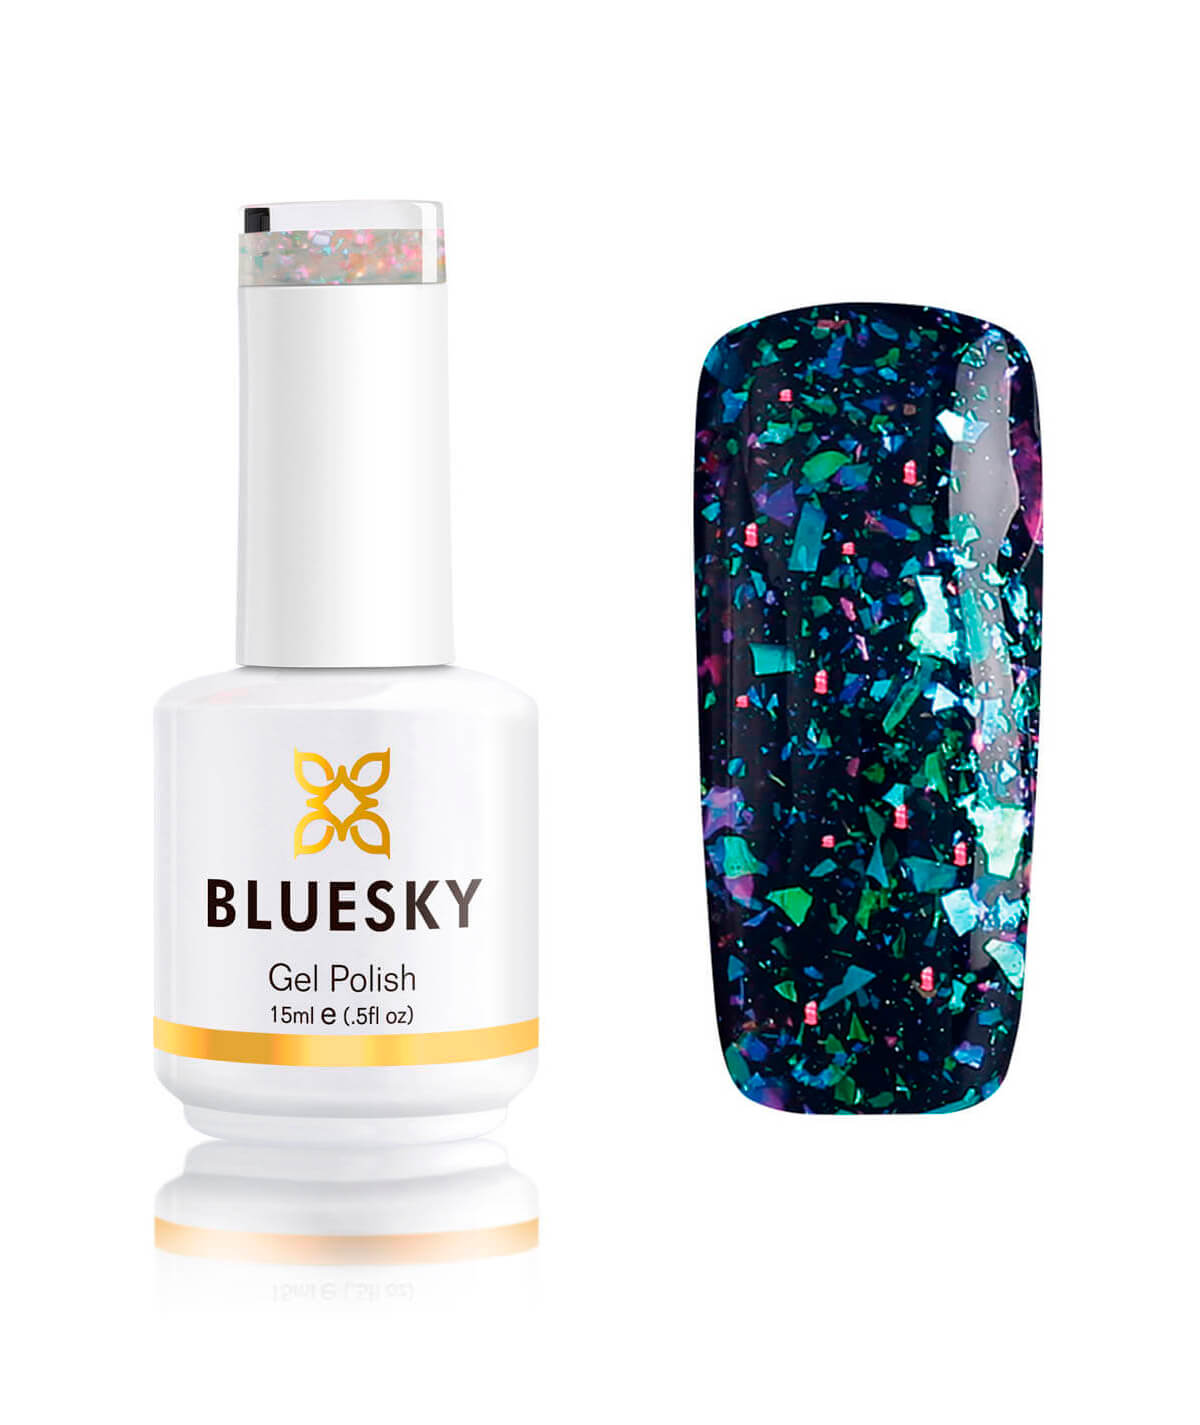 BLUESKY Esmalte Gel Galaxy 08  Esmalte Transparente con Papel metálico tornasol  Turquesa - Morado